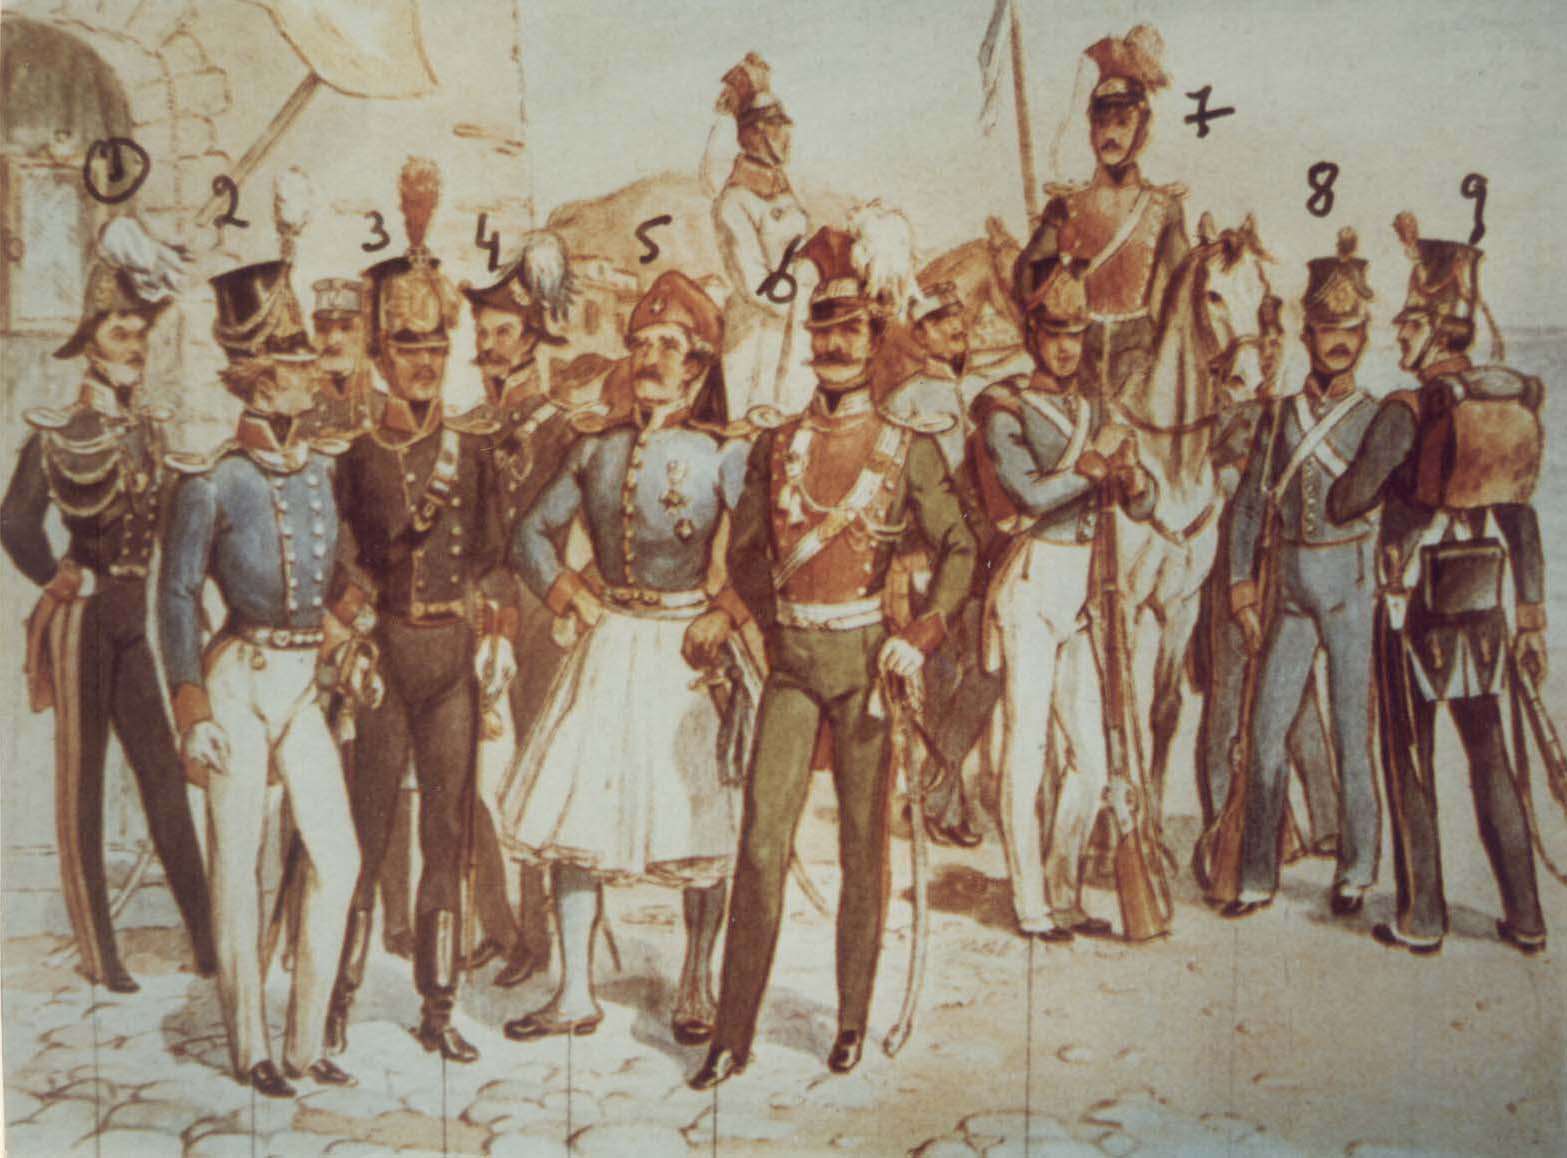 1η Απριλίου σαν σήμερα: 1822 νόμος για σύσταση Ελληνικού Στρατού με αρχηγό Γερμανό!